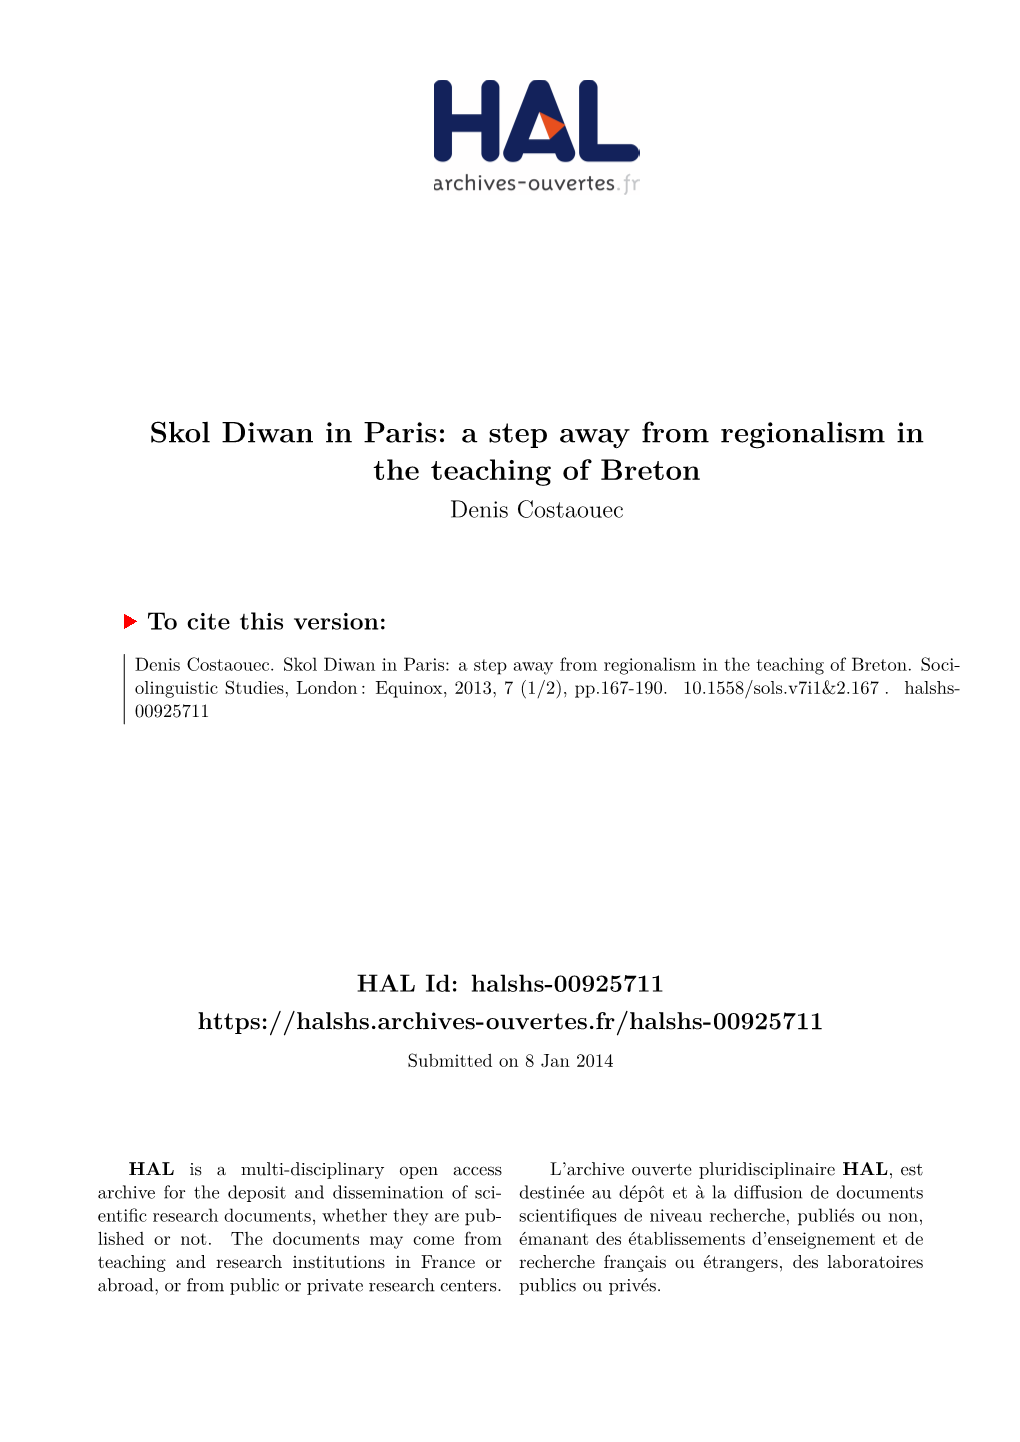 Skol Diwan in Paris: a Step Away from Regionalism in the Teaching of Breton Denis Costaouec